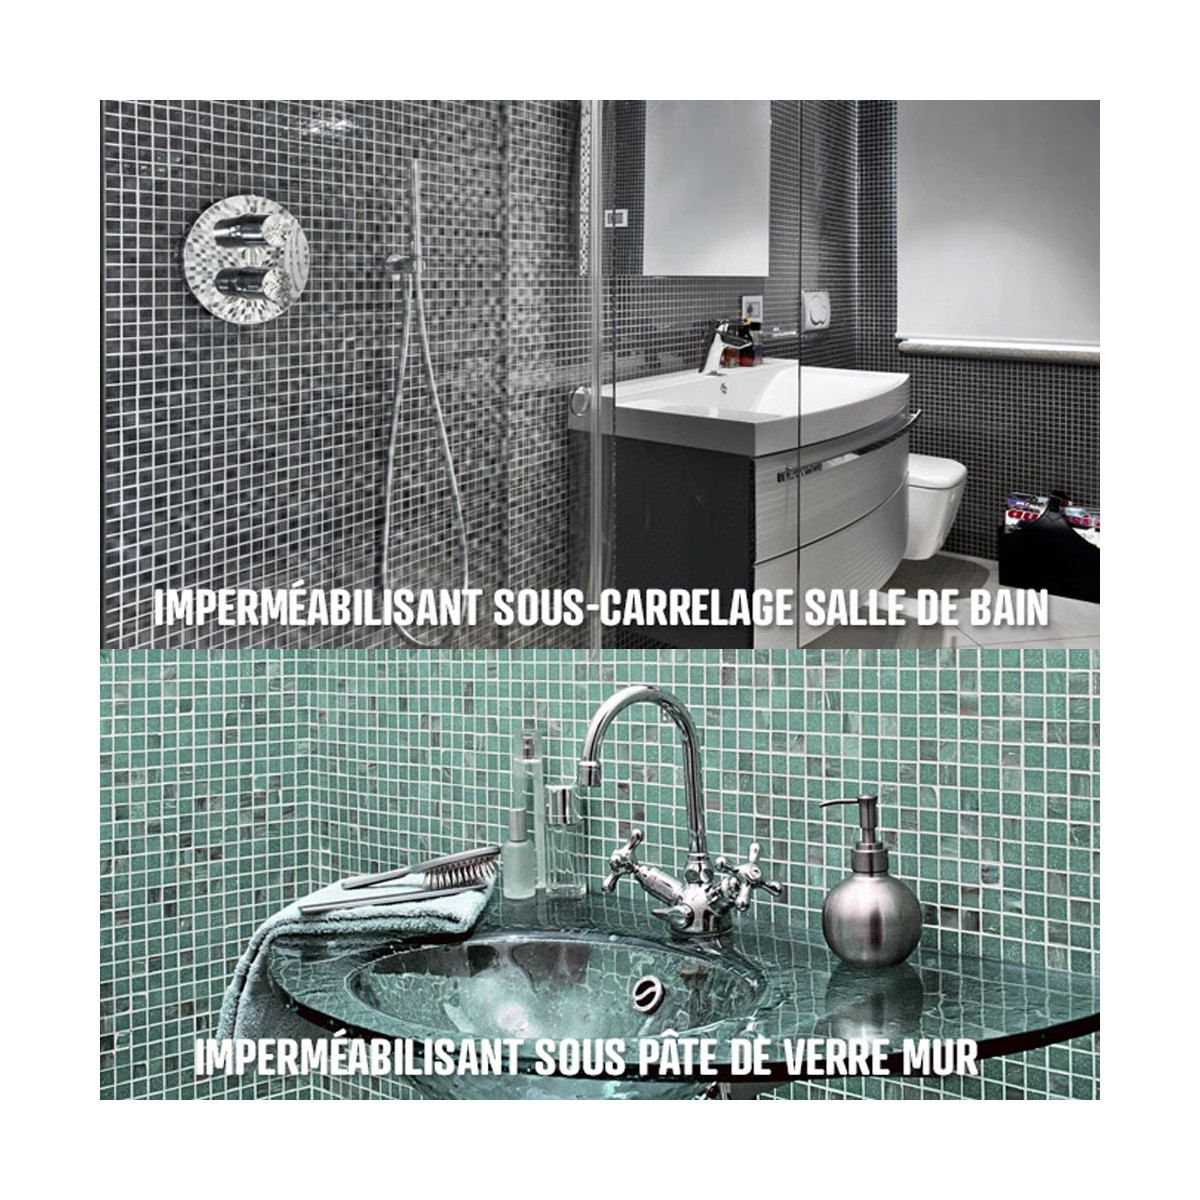 Etancheite sous carrelage, douche, salle de bain, cuisine, pièce humide -  Resine d'imperméabilisation - 10 litres